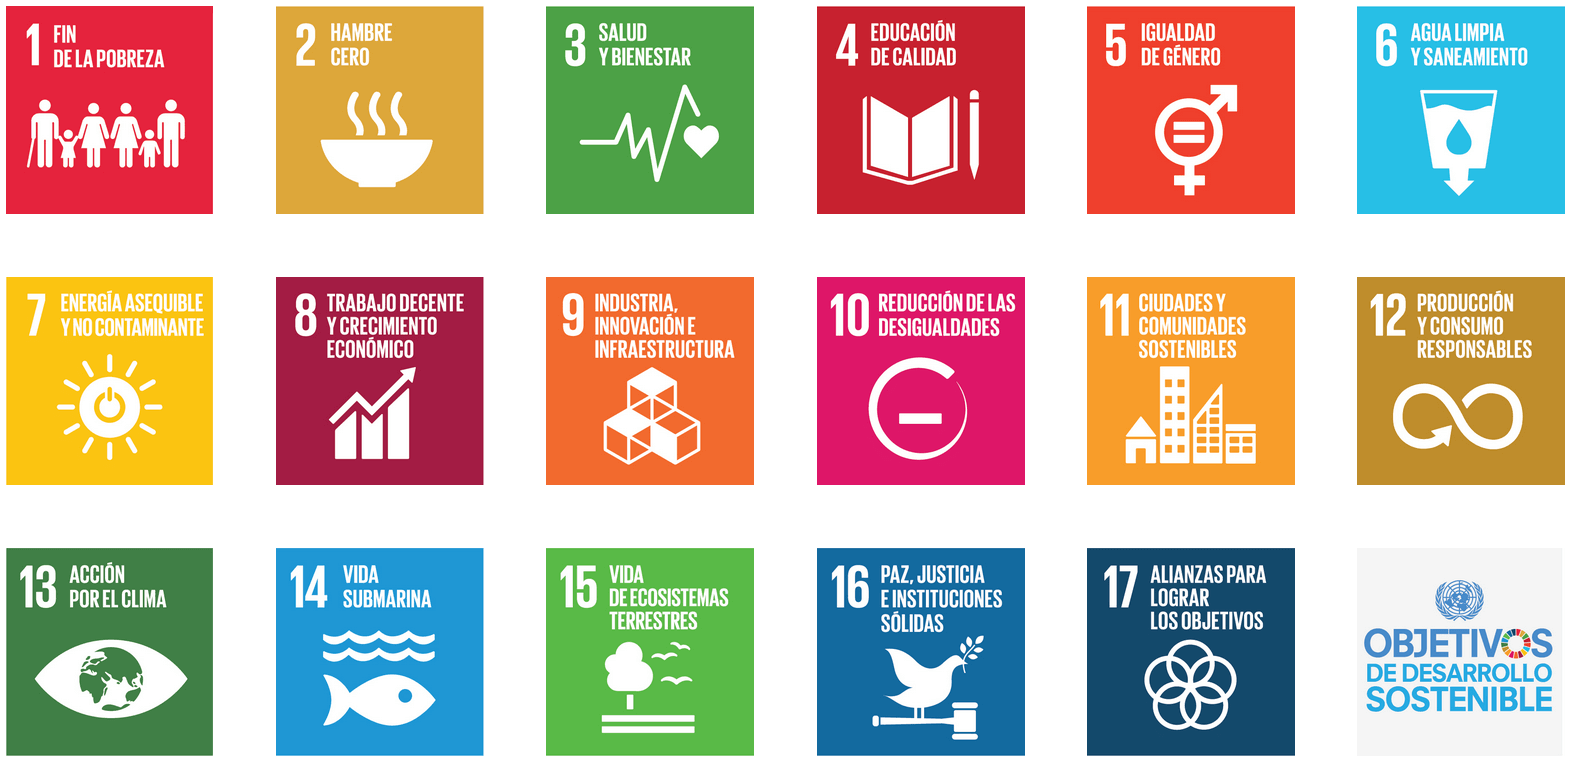 Los objetivos de desarrollo sostenible de la Agenda 2030